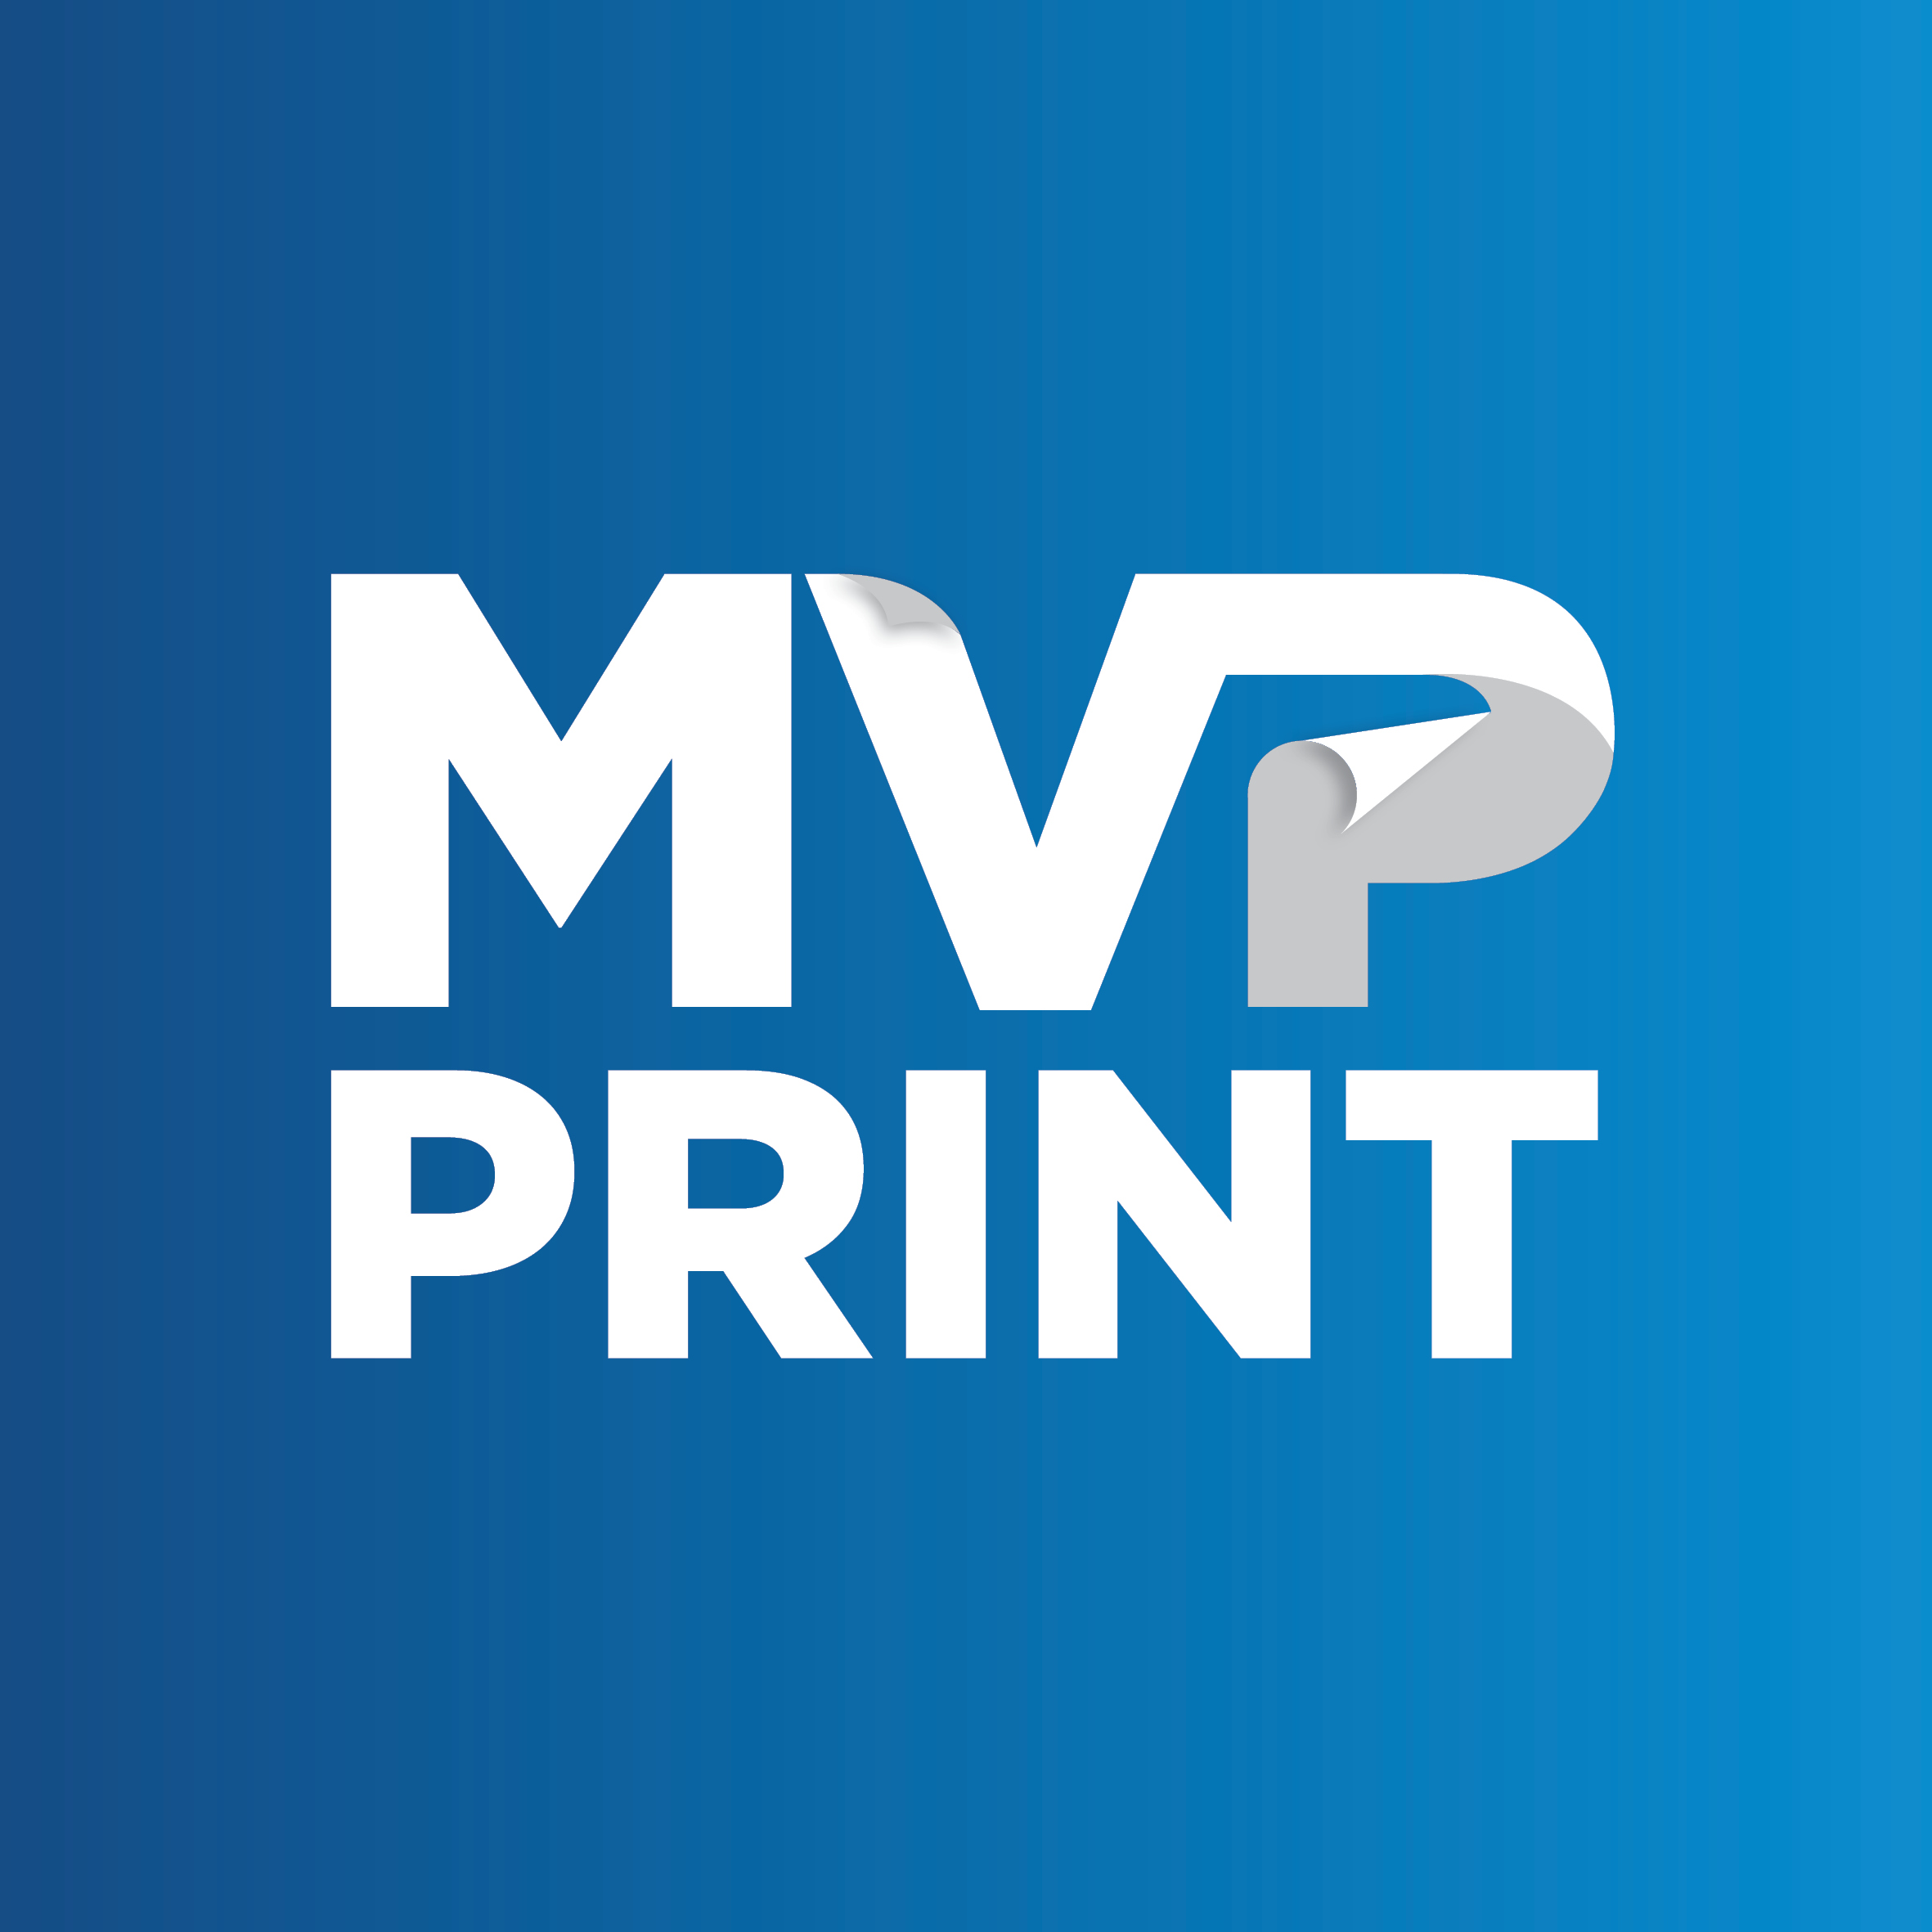 MVP Print review